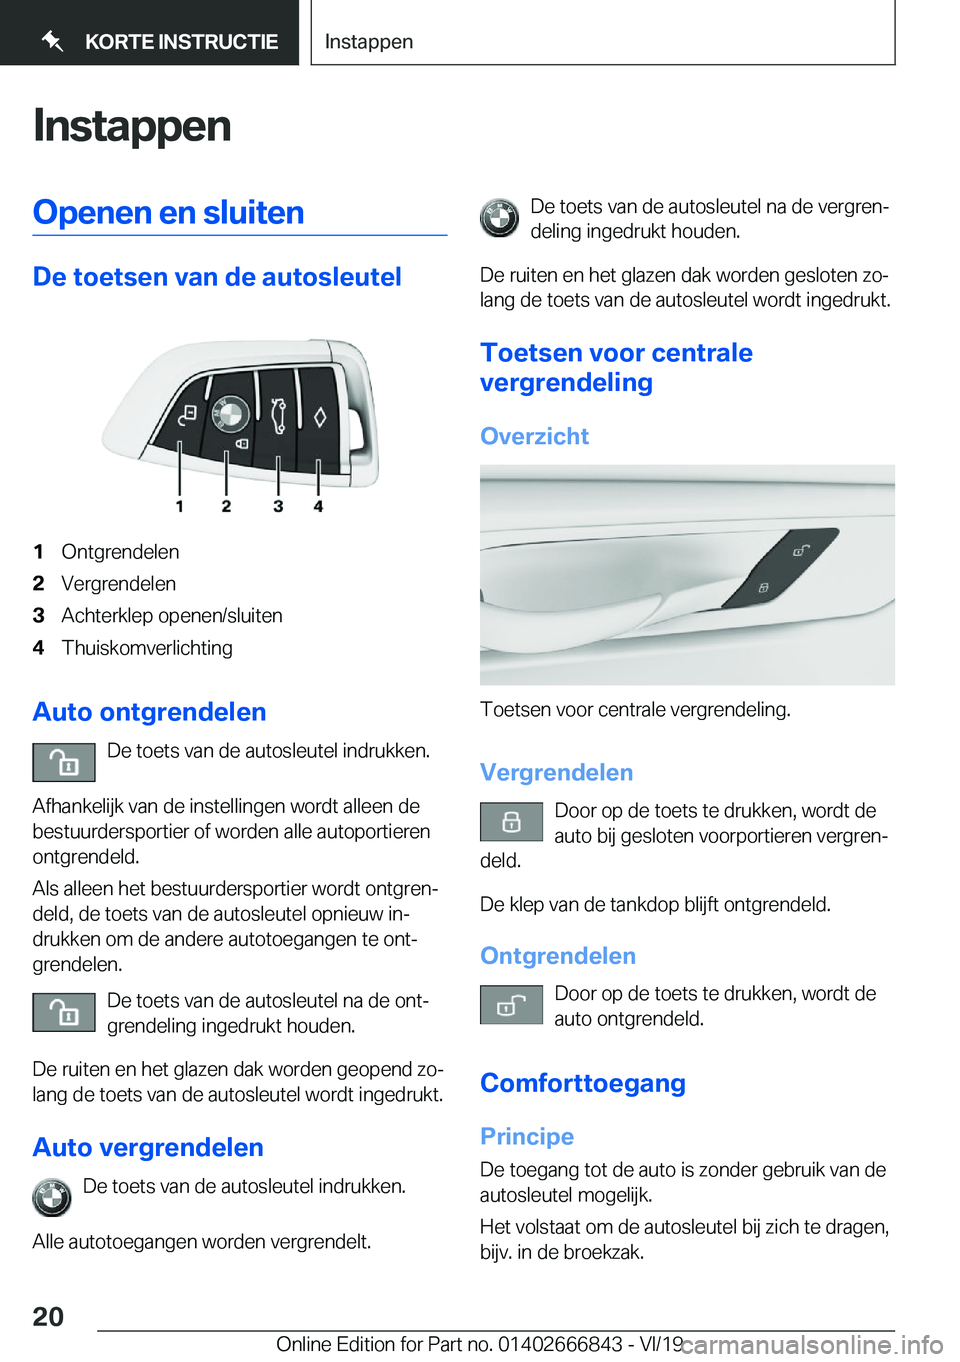 BMW X3 M 2020  Instructieboekjes (in Dutch) �I�n�s�t�a�p�p�e�n�O�p�e�n�e�n��e�n��s�l�u�i�t�e�n
�D�e��t�o�e�t�s�e�n��v�a�n��d�e��a�u�t�o�s�l�e�u�t�e�l
�1�O�n�t�g�r�e�n�d�e�l�e�n�2�V�e�r�g�r�e�n�d�e�l�e�n�3�A�c�h�t�e�r�k�l�e�p��o�p�e�n�e�n